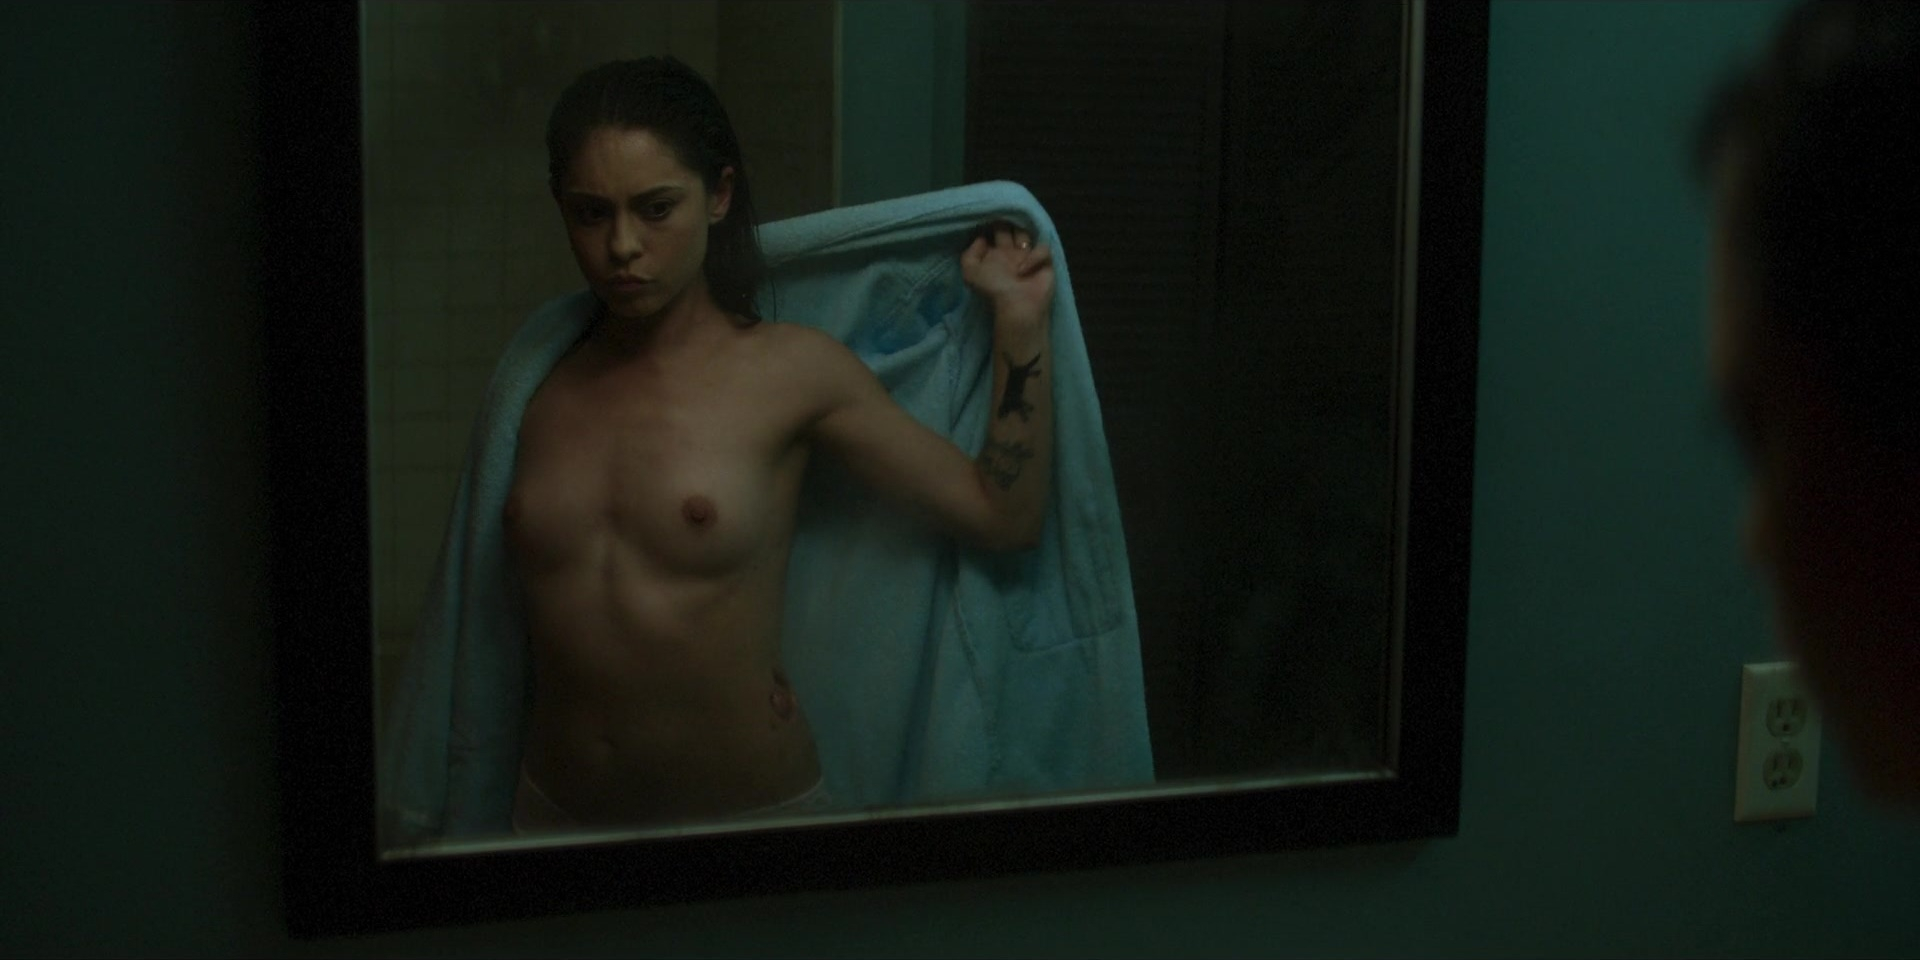 Nude video celebs " Actress " Rosa Salazar